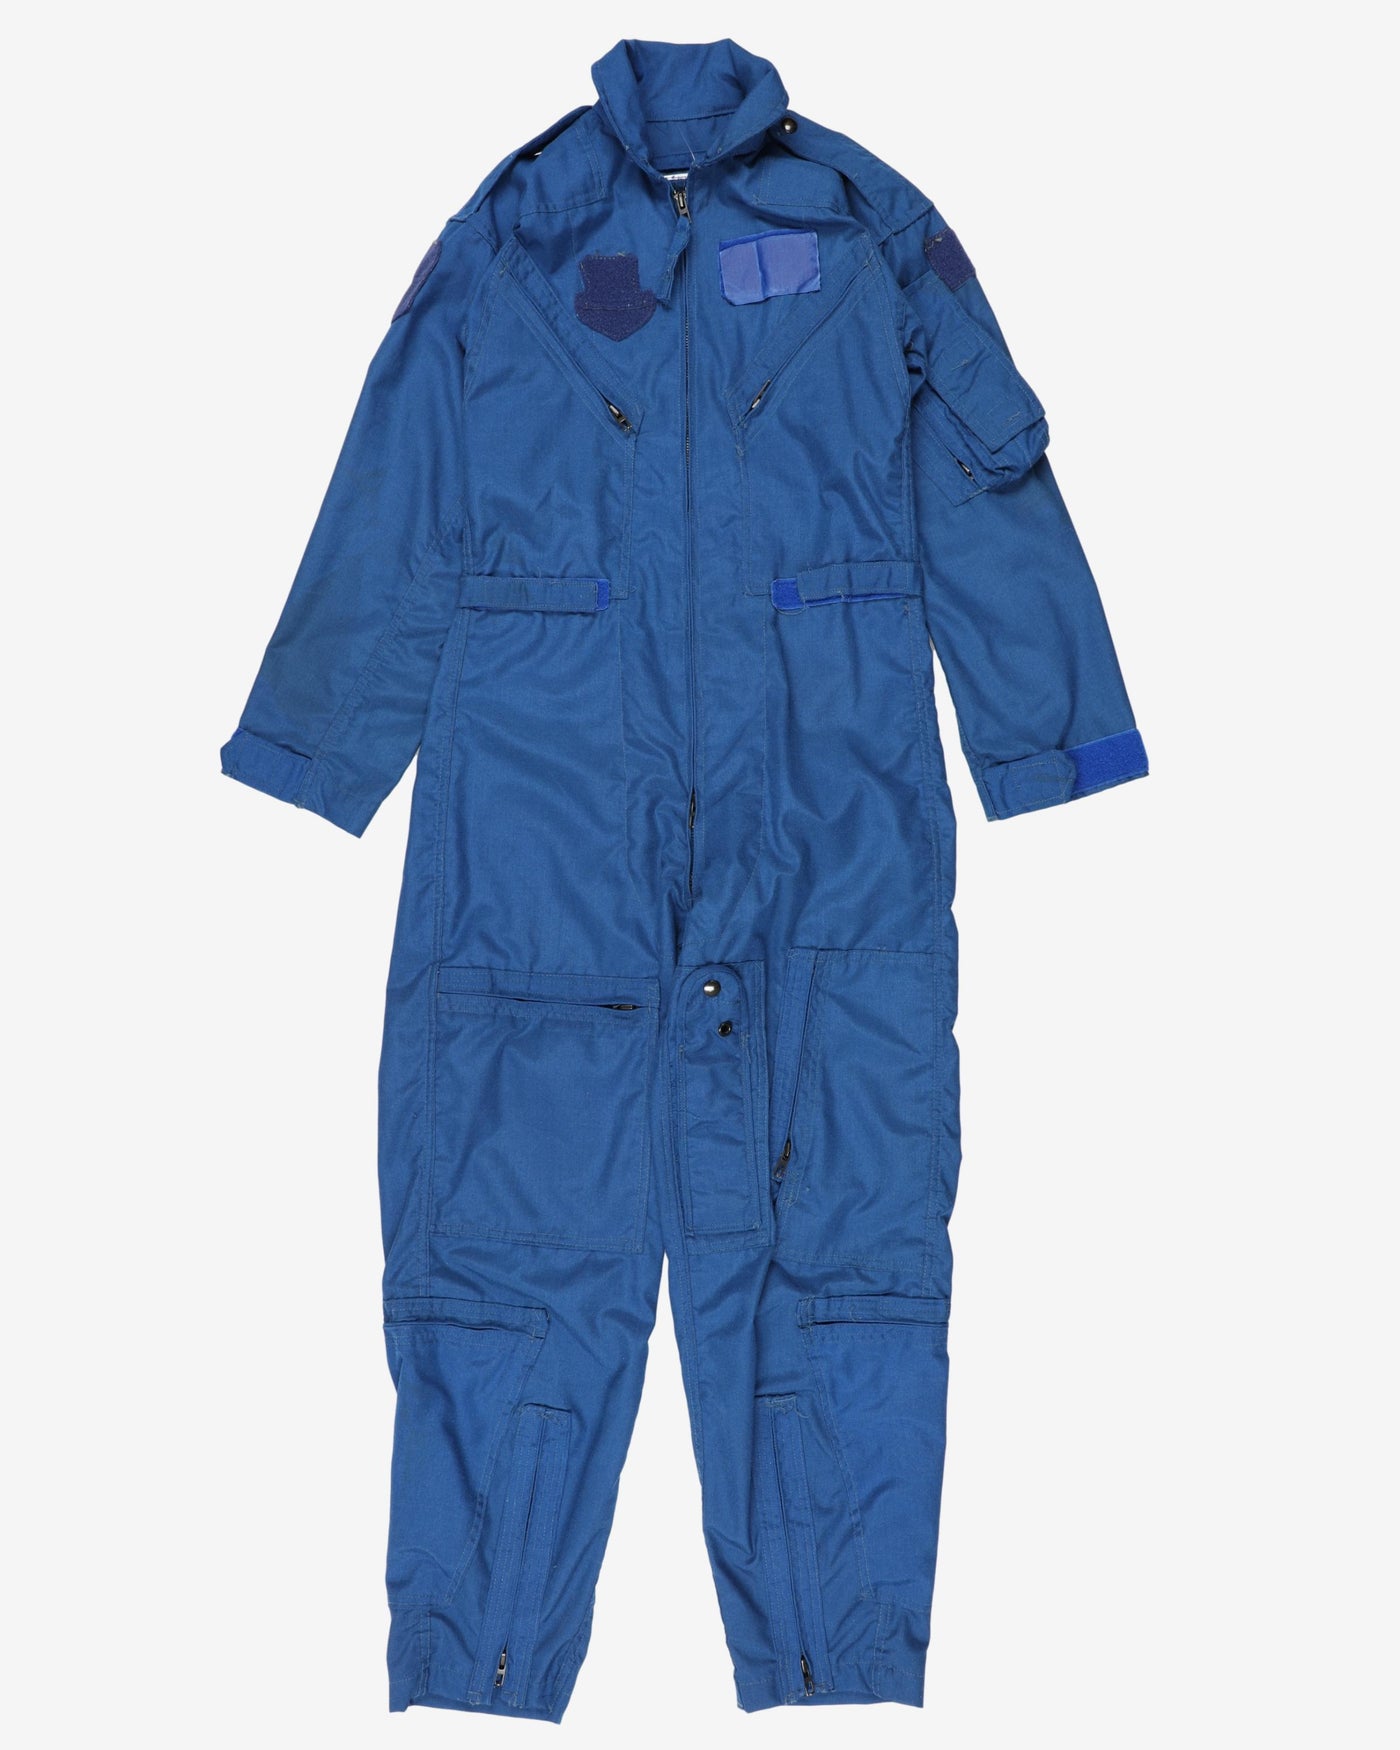 Rare 1987 Vintage US Coast Guard Pilot Flight Suit Coveralls - 34S